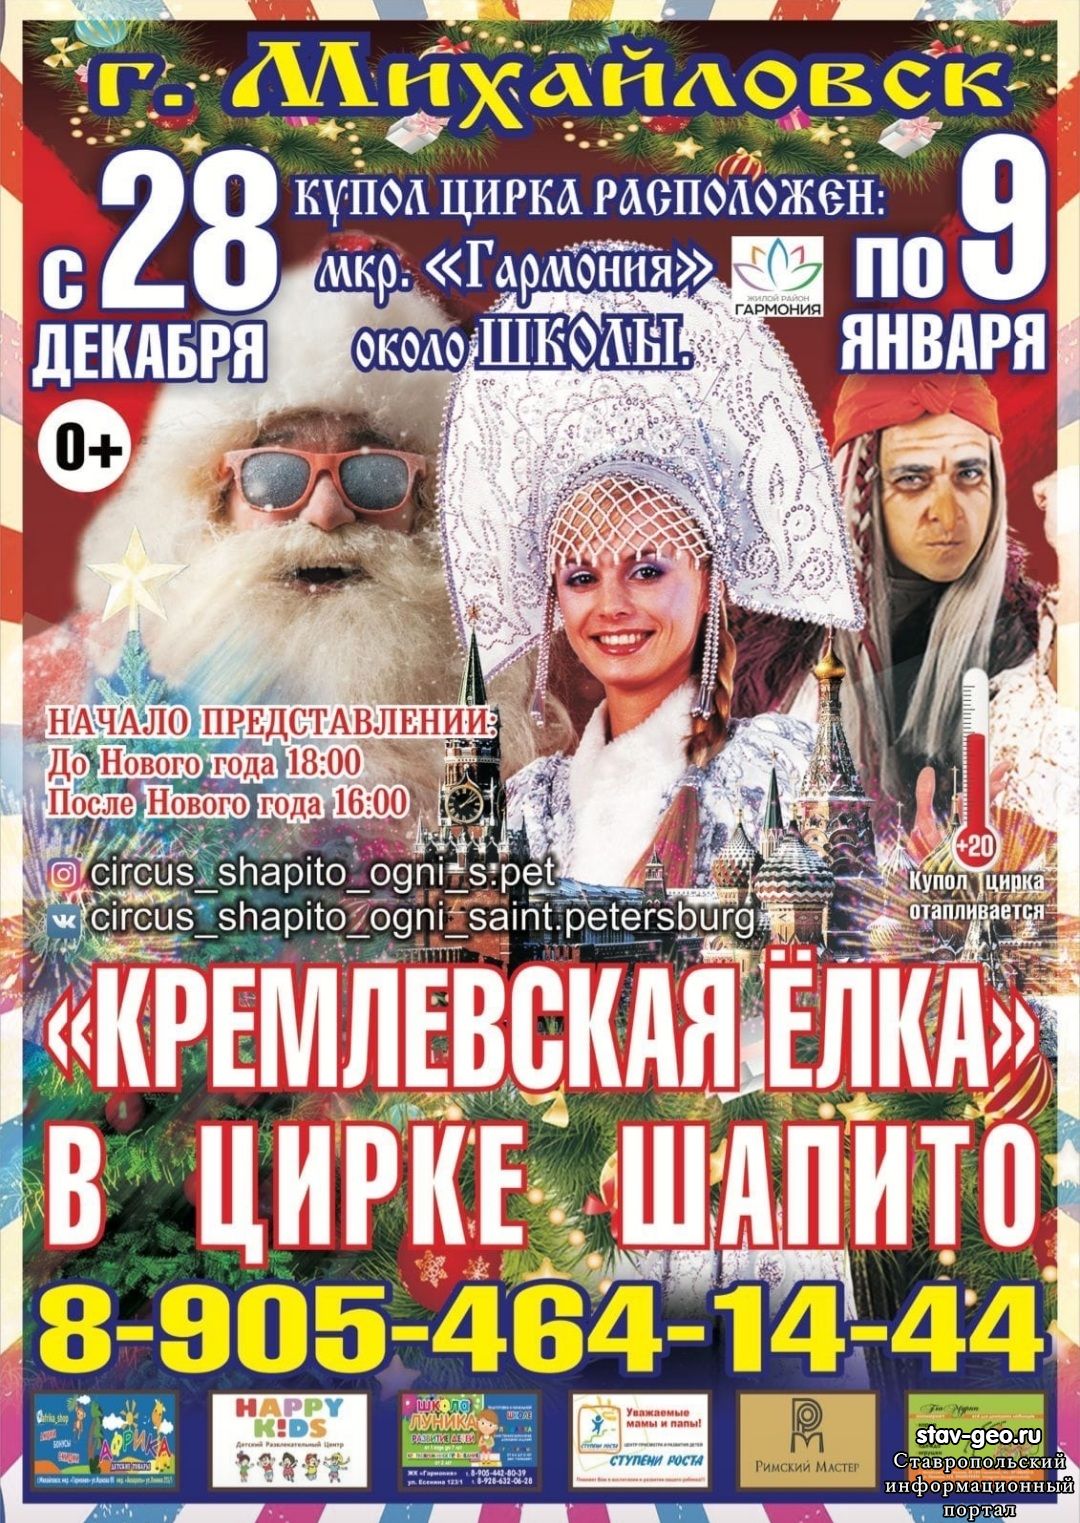 В жилом районе Гармония состоится премьера представления от Санкт-Петербургского цирка шапито «Огни Санкт-Петербурга» с 28 декабря по 9 января